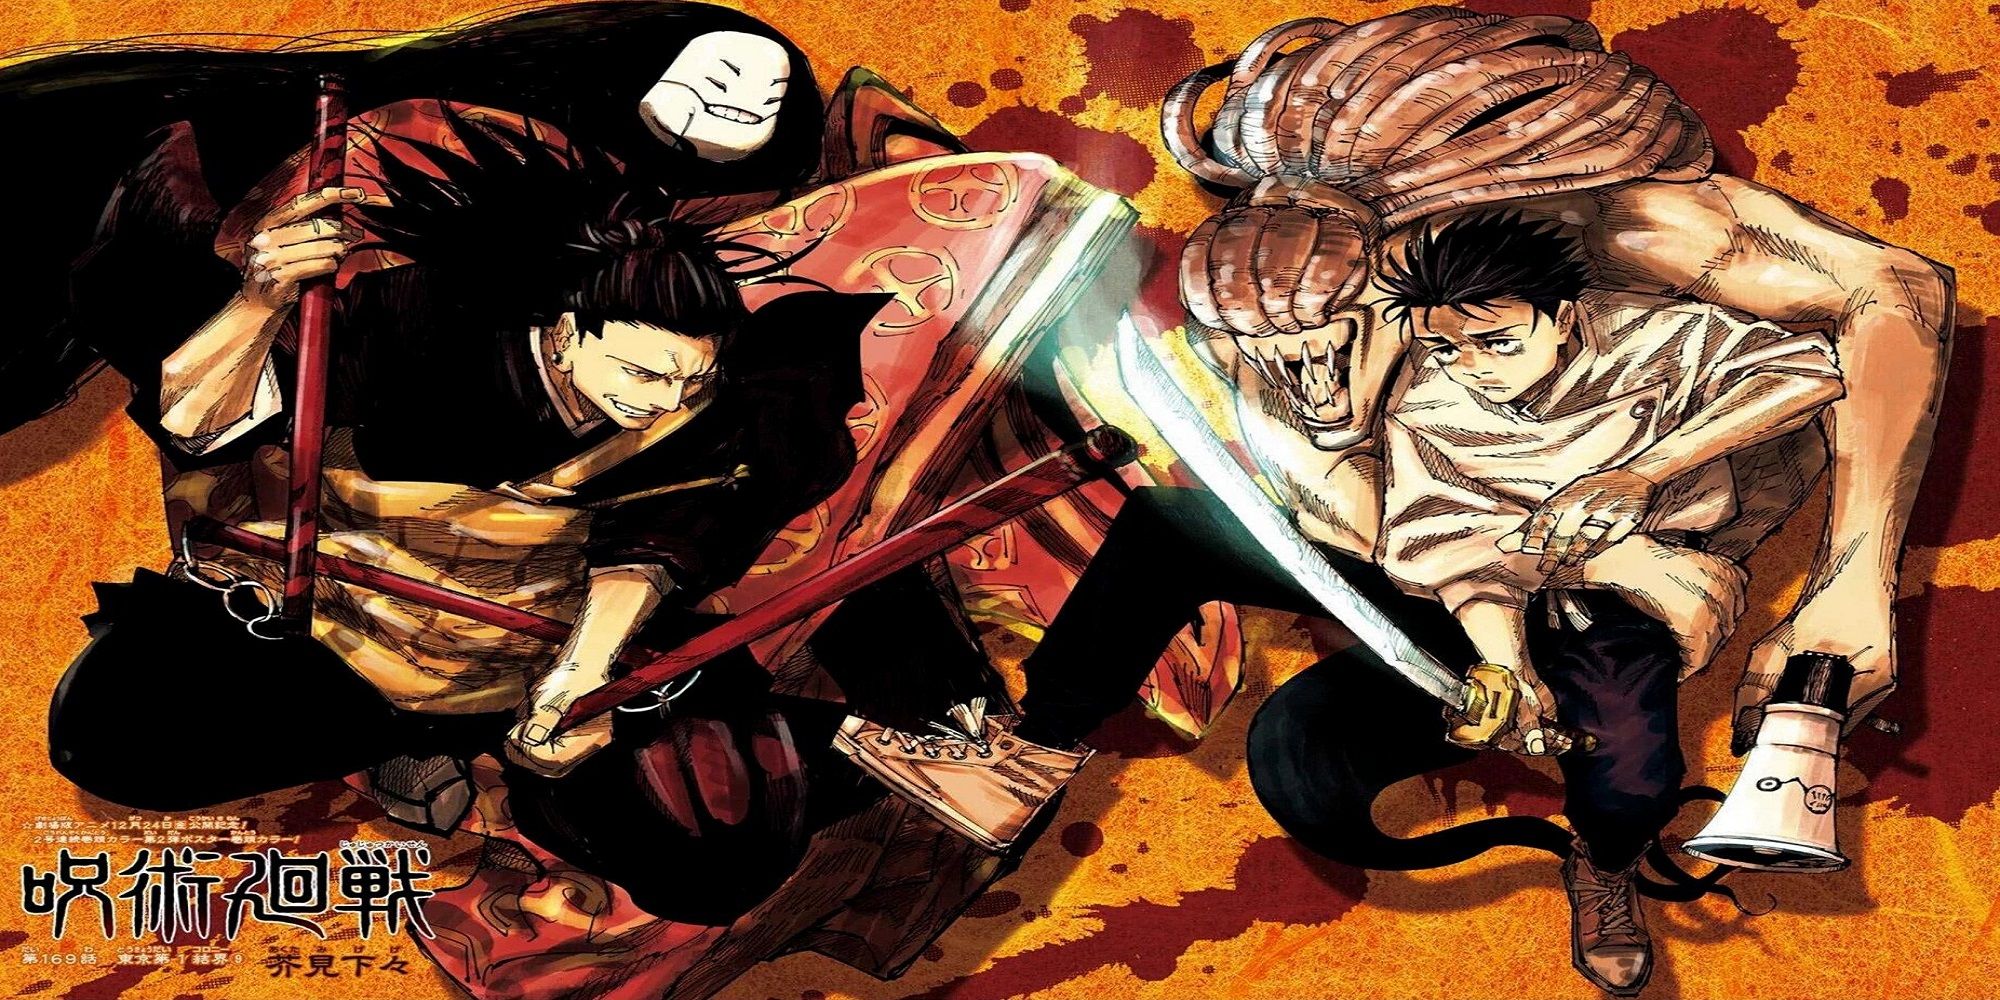 Yuta and Geto in the manga